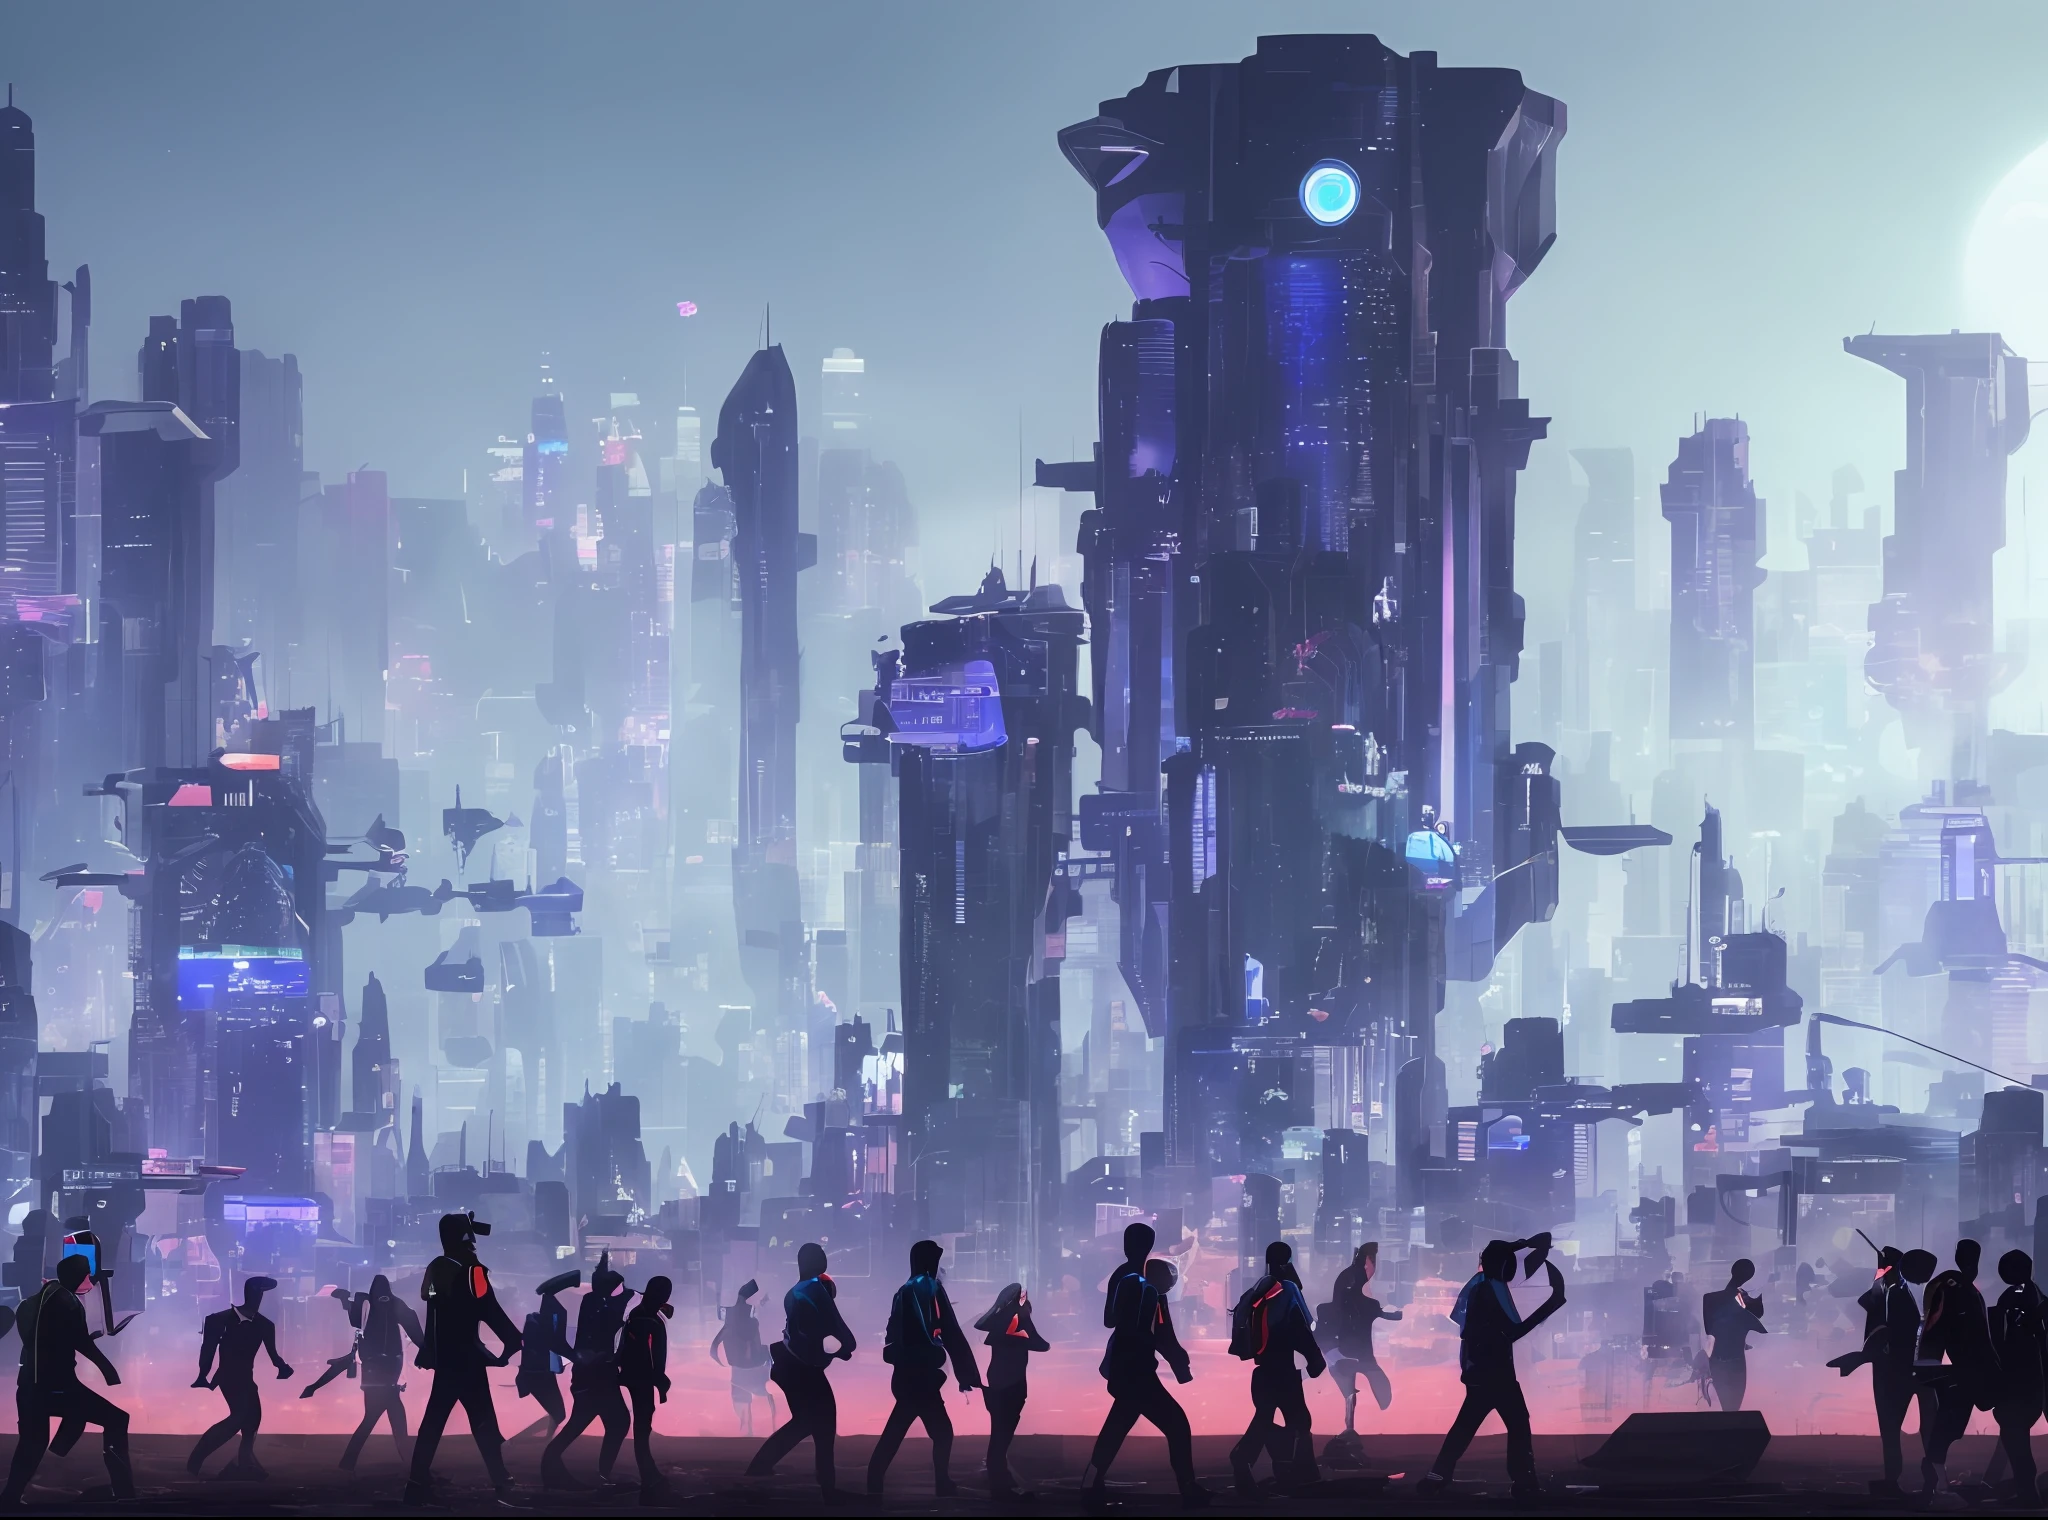 인간과 유사한 신체를 가진 많은 외계인, 미래의 사이버 도시 행진